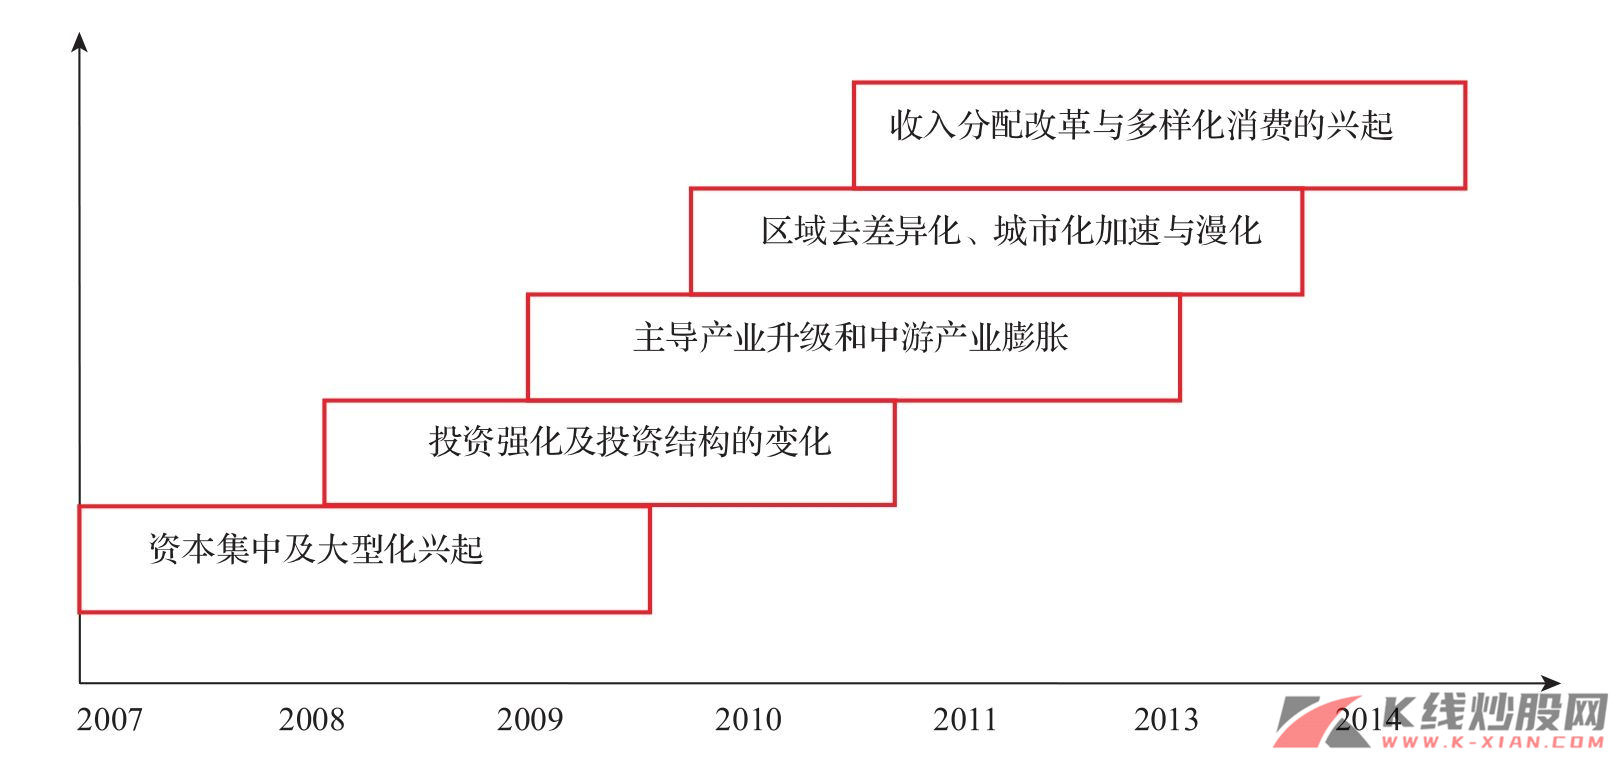 工业化升级五个特征在中国的体现和成长的线索